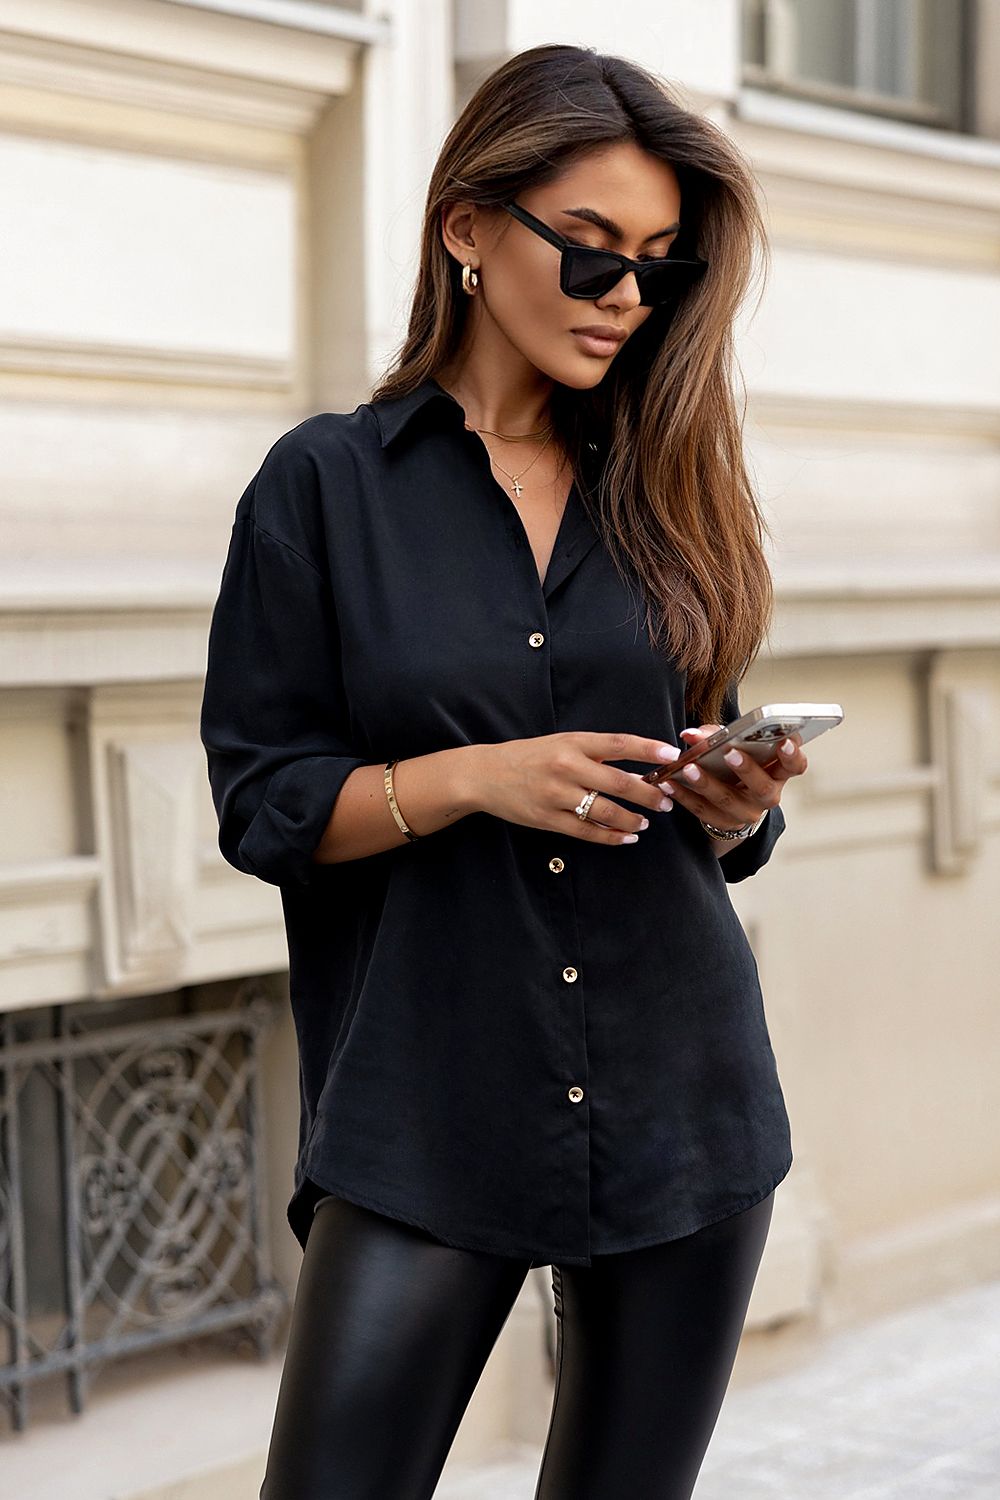 Κλασικό γυναικείο πουκάμισο σε μαύρο